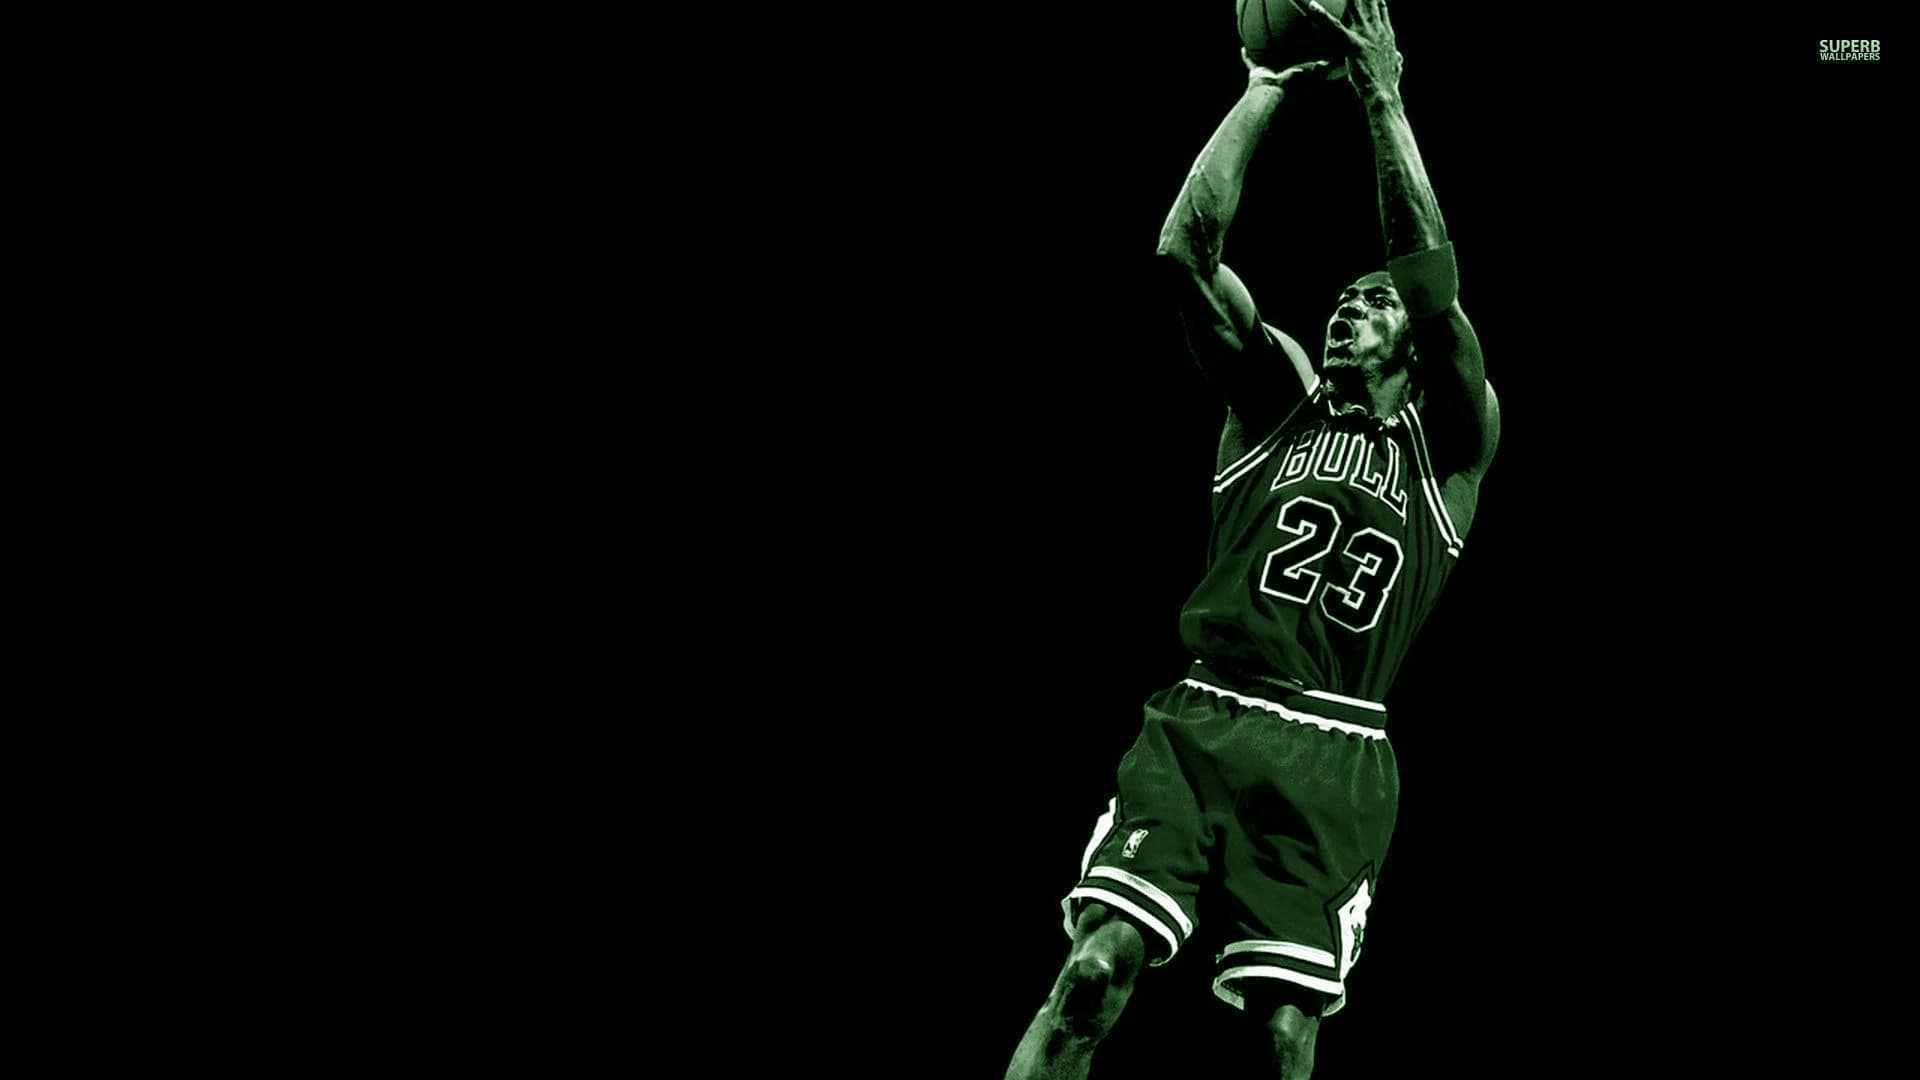 Michael Jordan Cool Wallpaper - NawPic